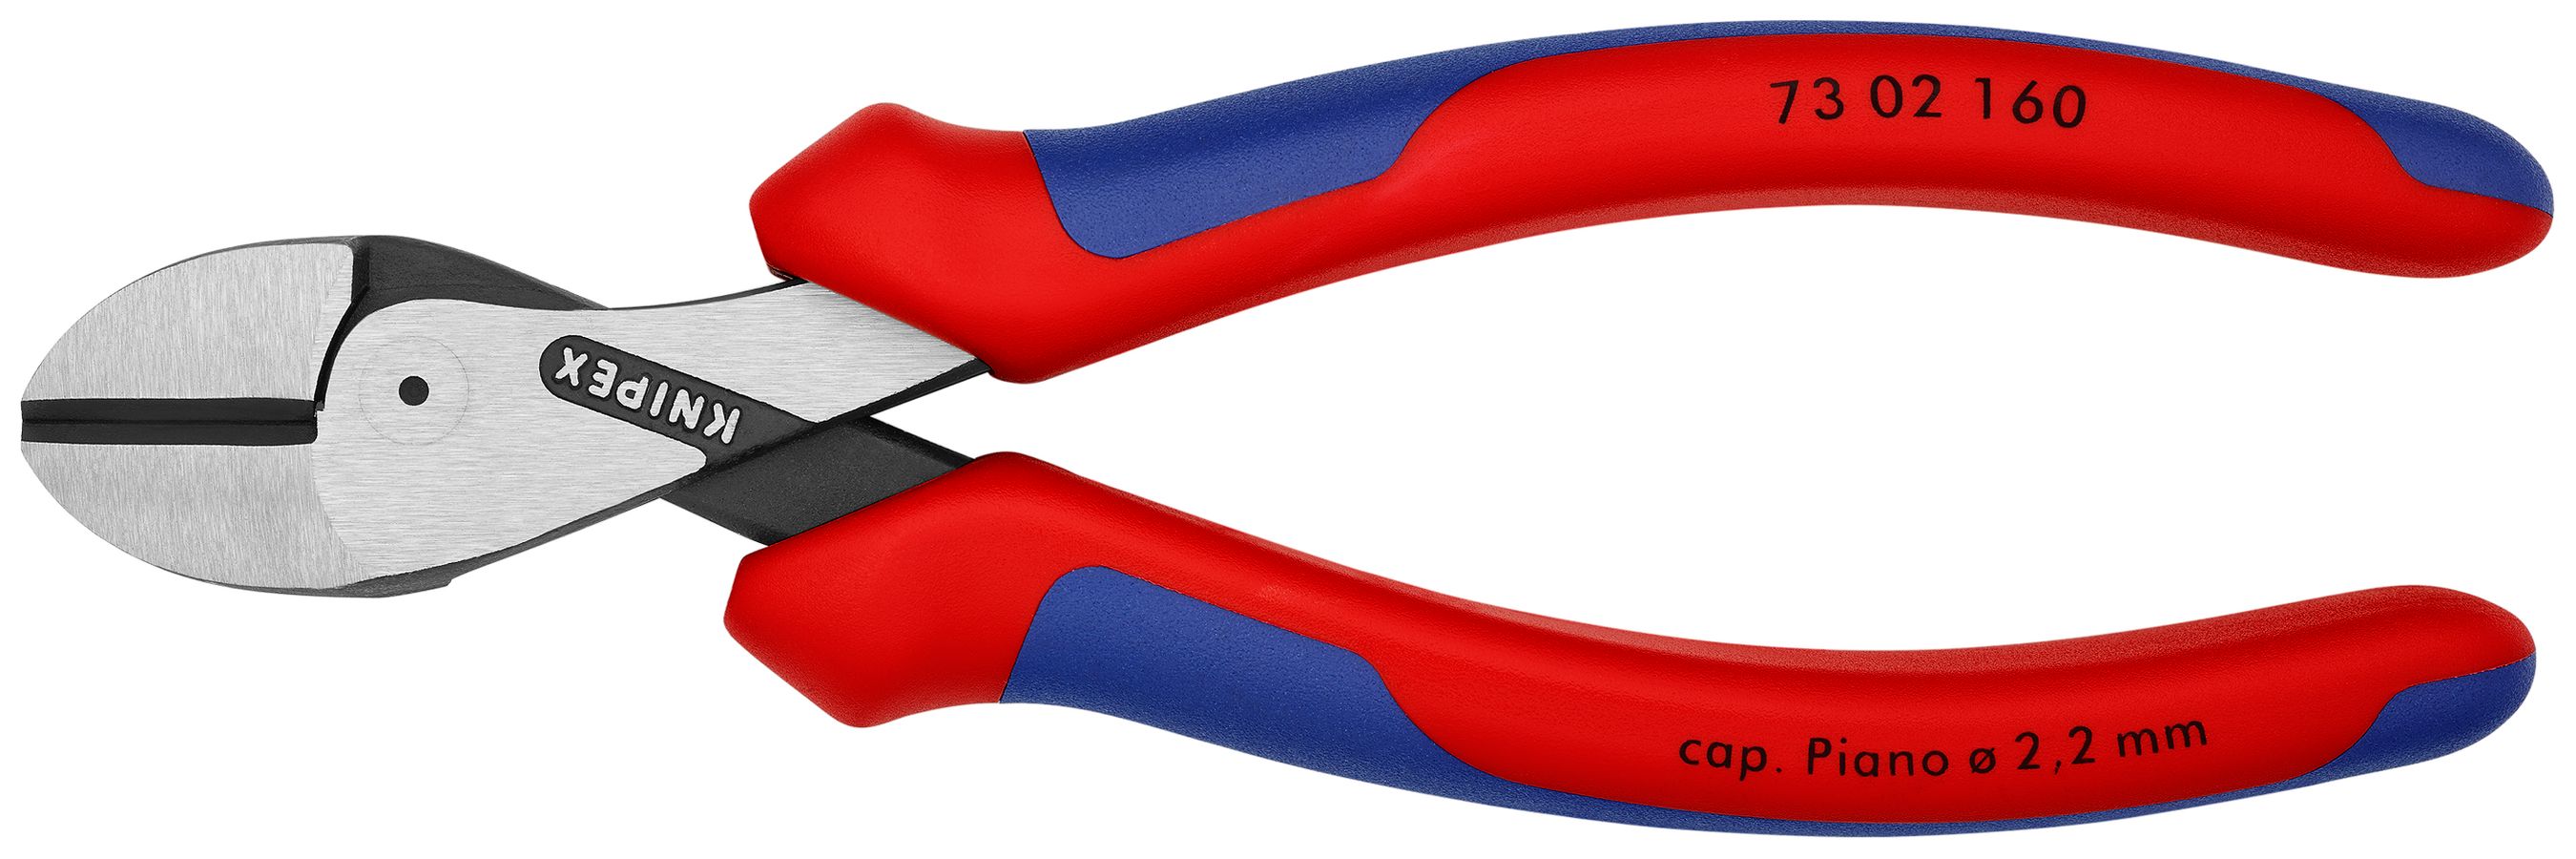 X-Cut® Compact Diagonal Cutters | KNIPEX Tools